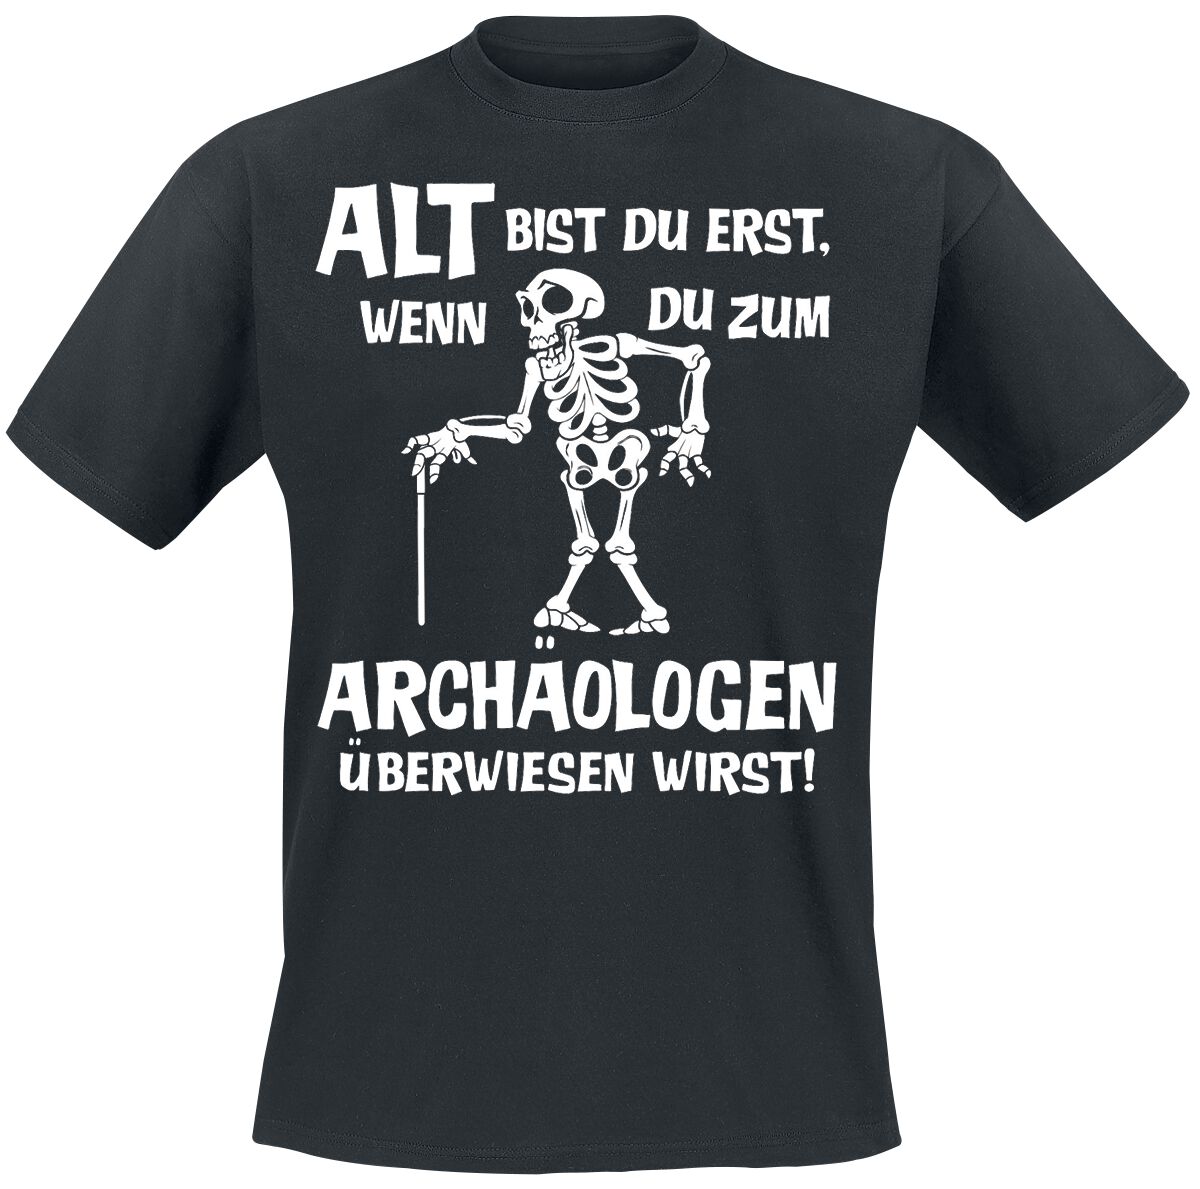 Sprüche T-Shirt - Alt bist du erst, wenn du zum Archäologen überwiesen wirst! - M bis 4XL - für Männer - Größe L - schwarz